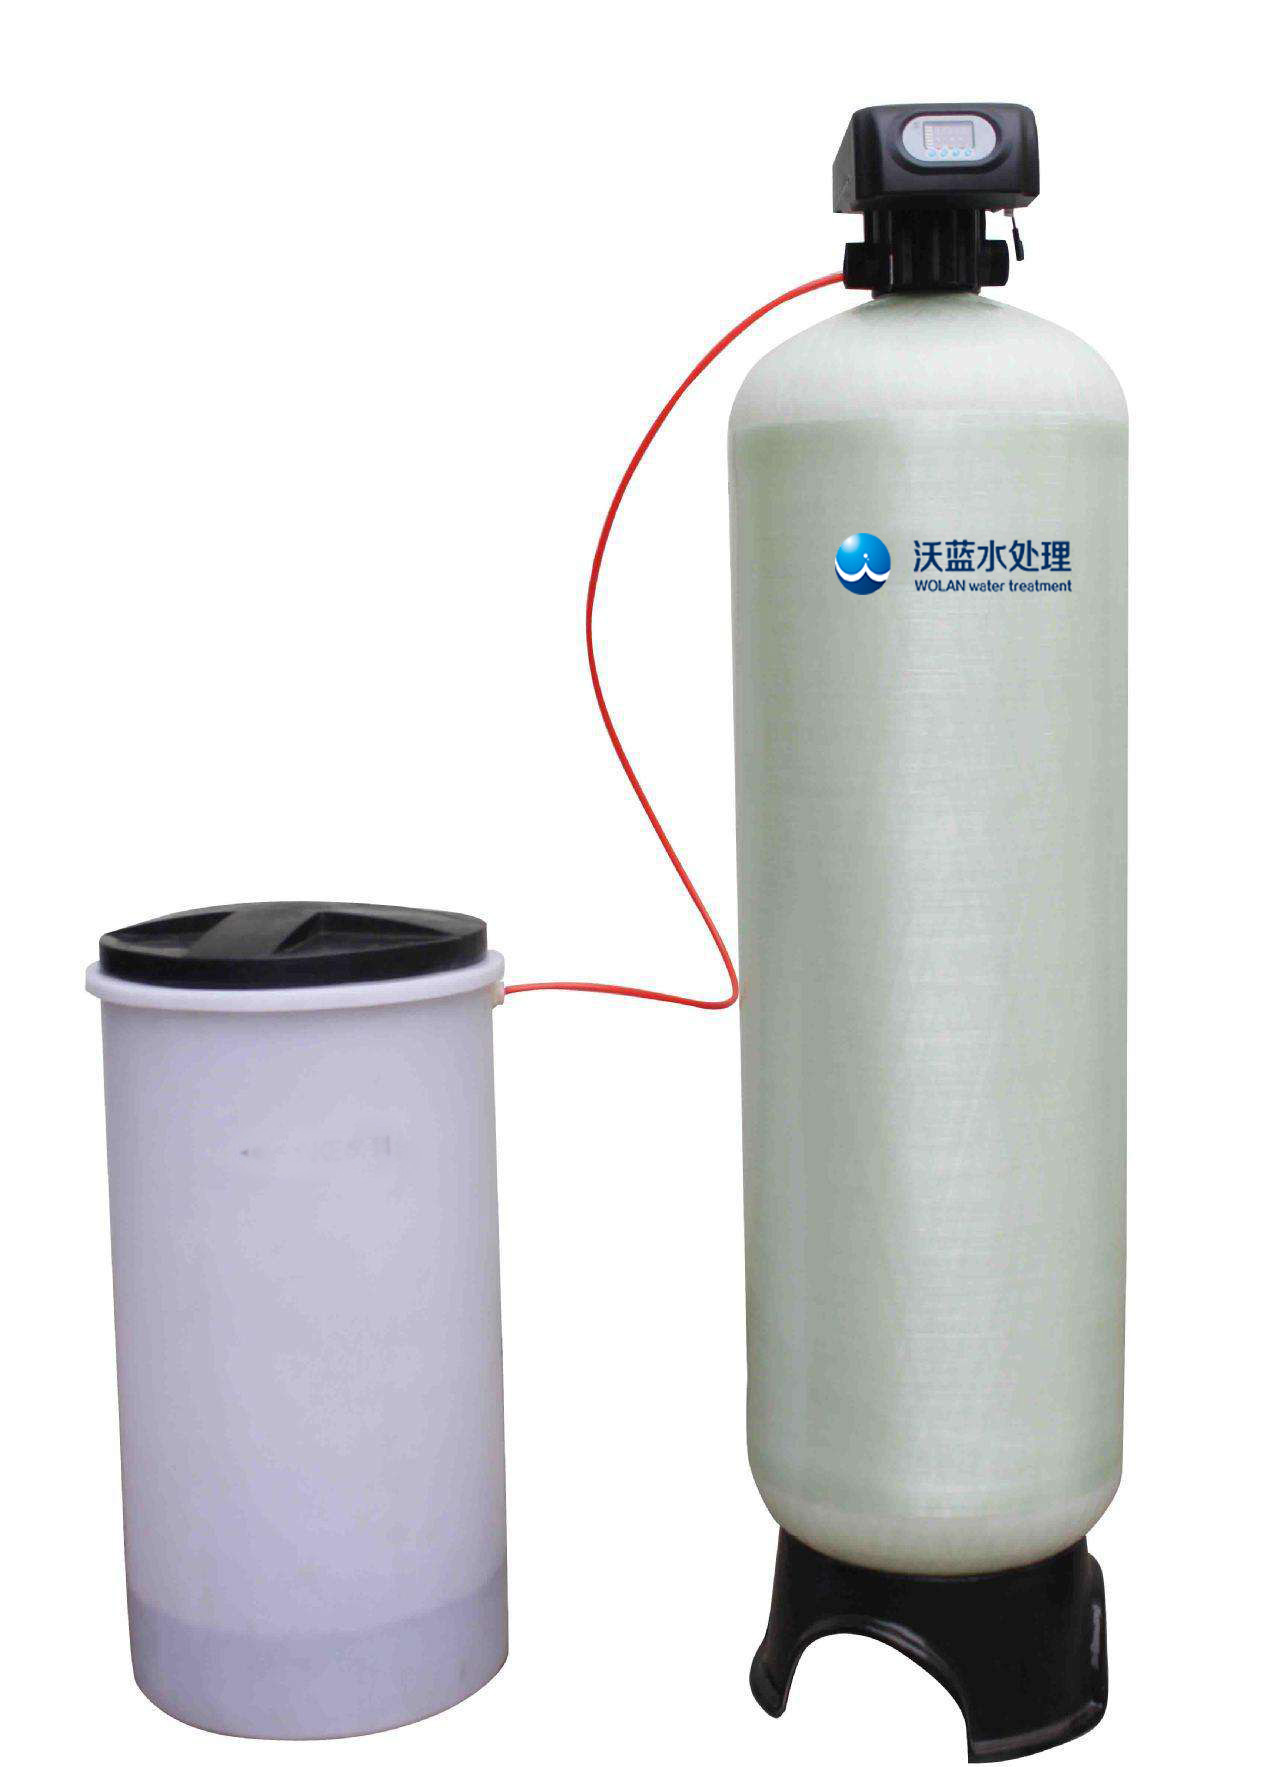 沃蓝水处理型自动软化水设备